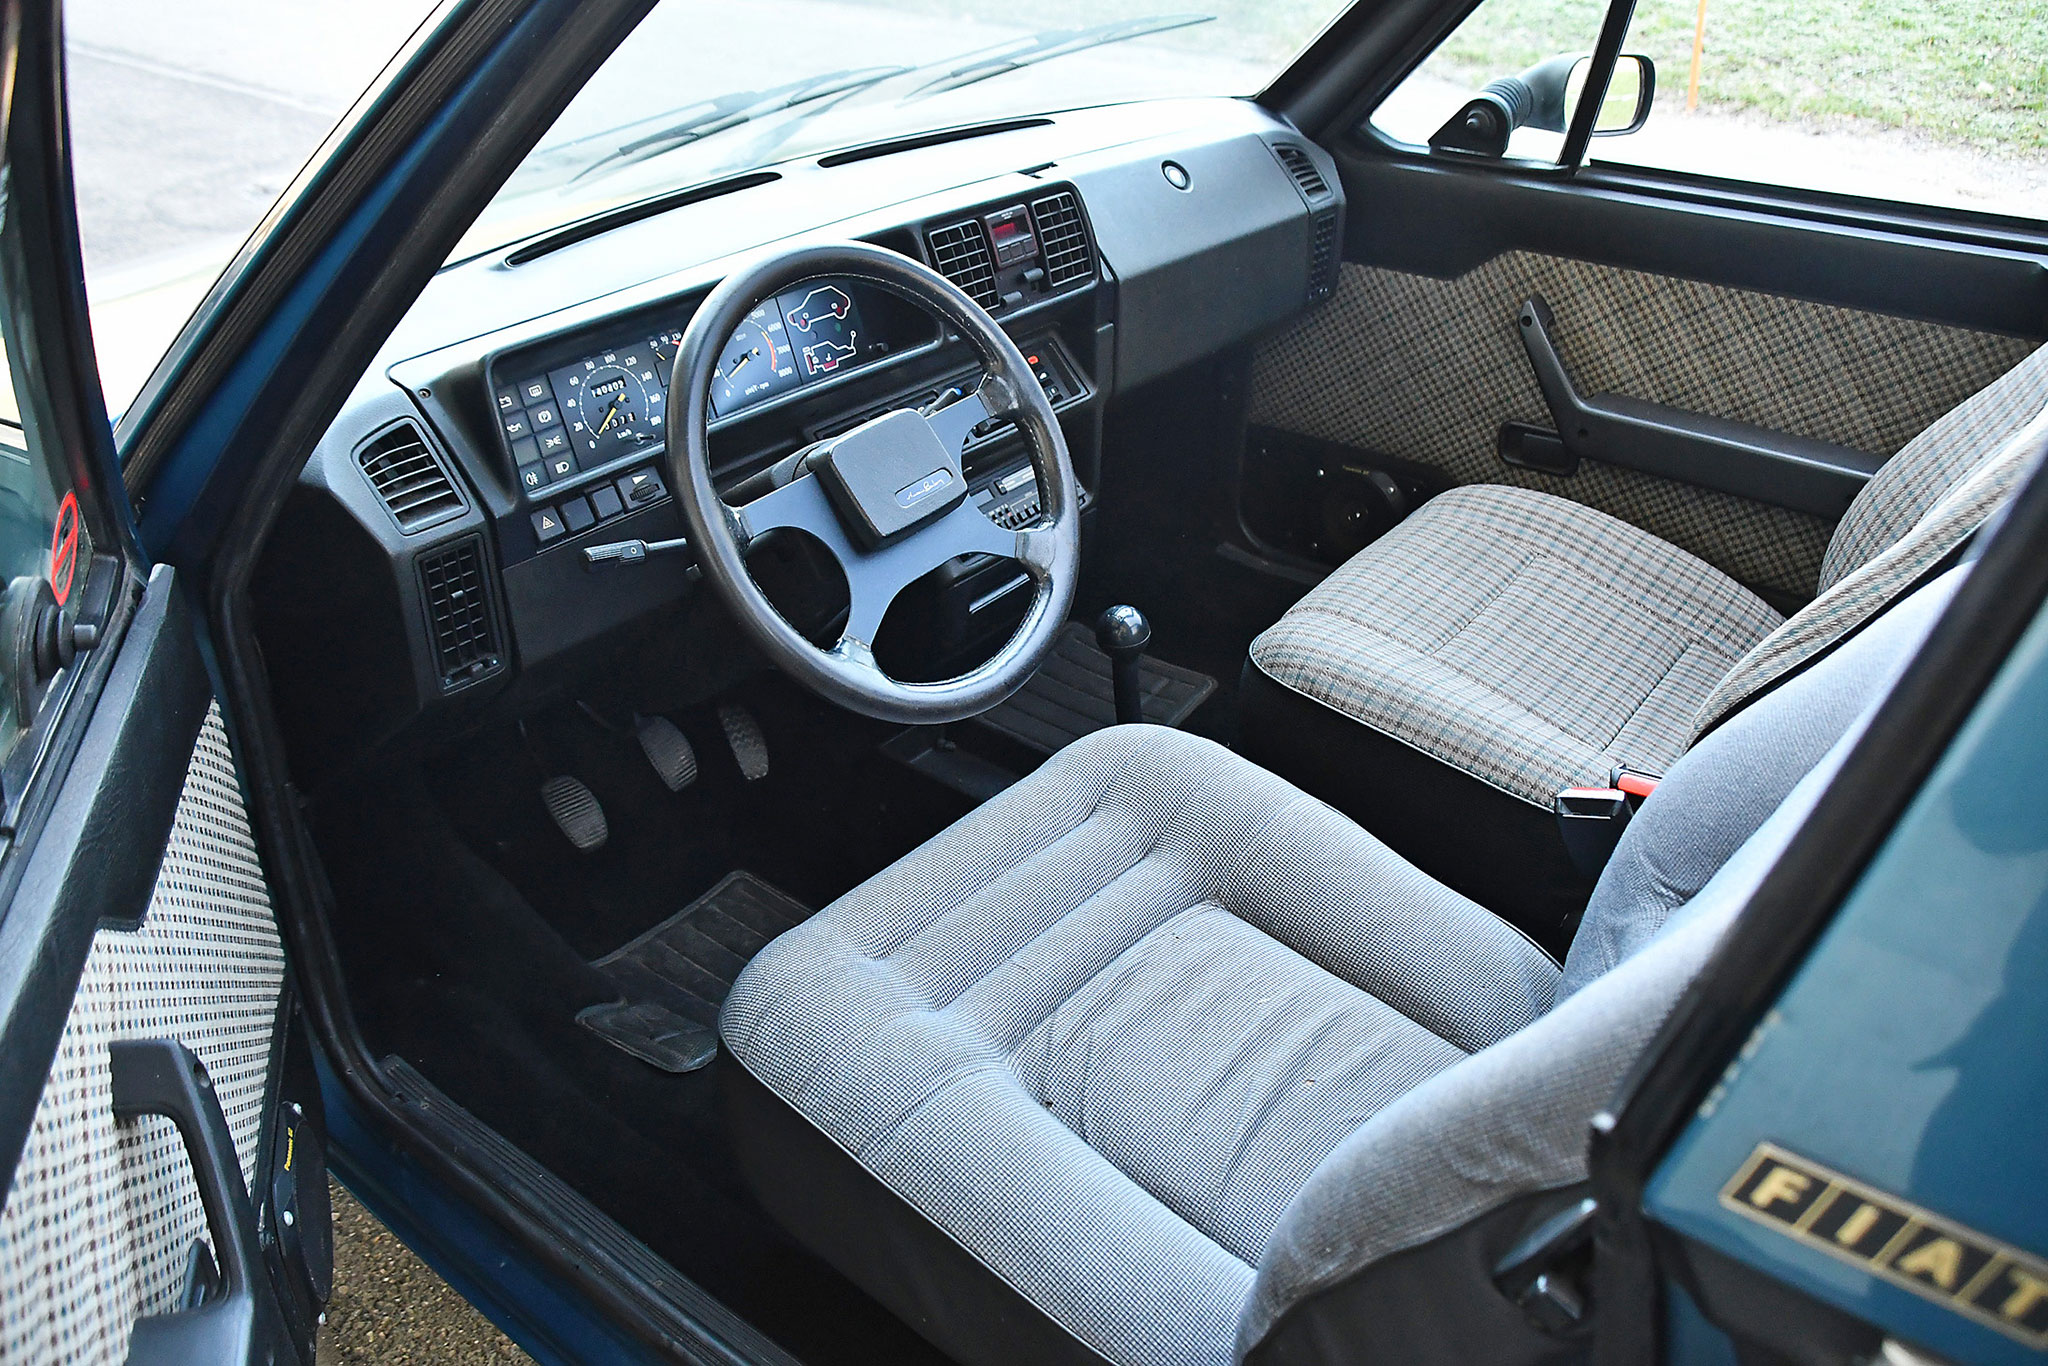 1985 Fiat Ritmo 85 S Palinuro – intérieur en bon état mais capote à revoir avant de reprendre la route.